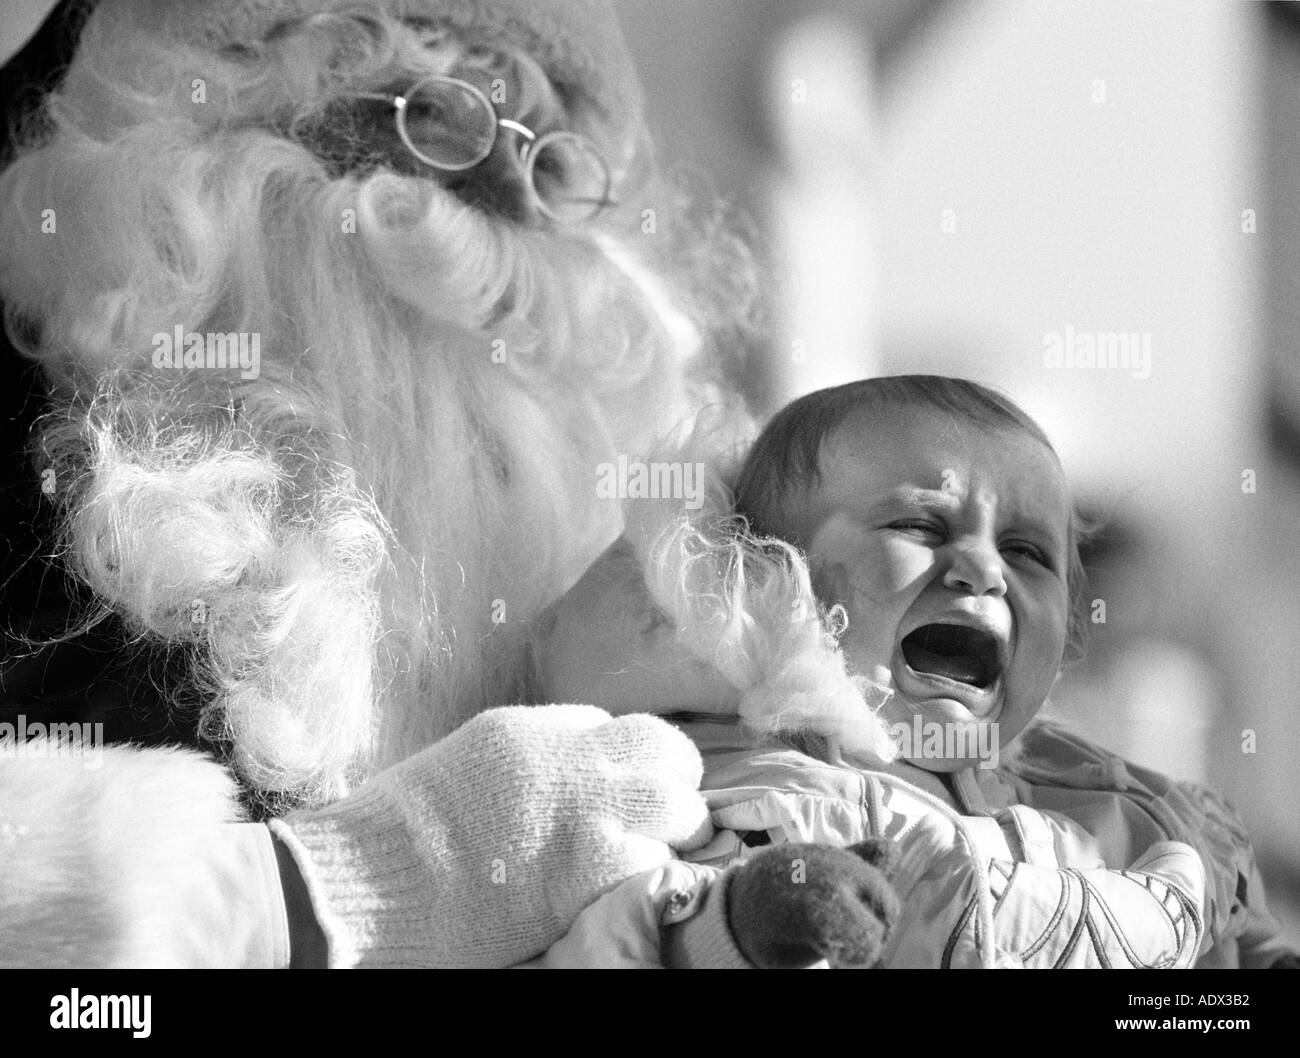 Falso santa claus sosteniendo el llanto del bebé asustado niño humor San Nicolás San nick fiesta de navidad Foto de stock